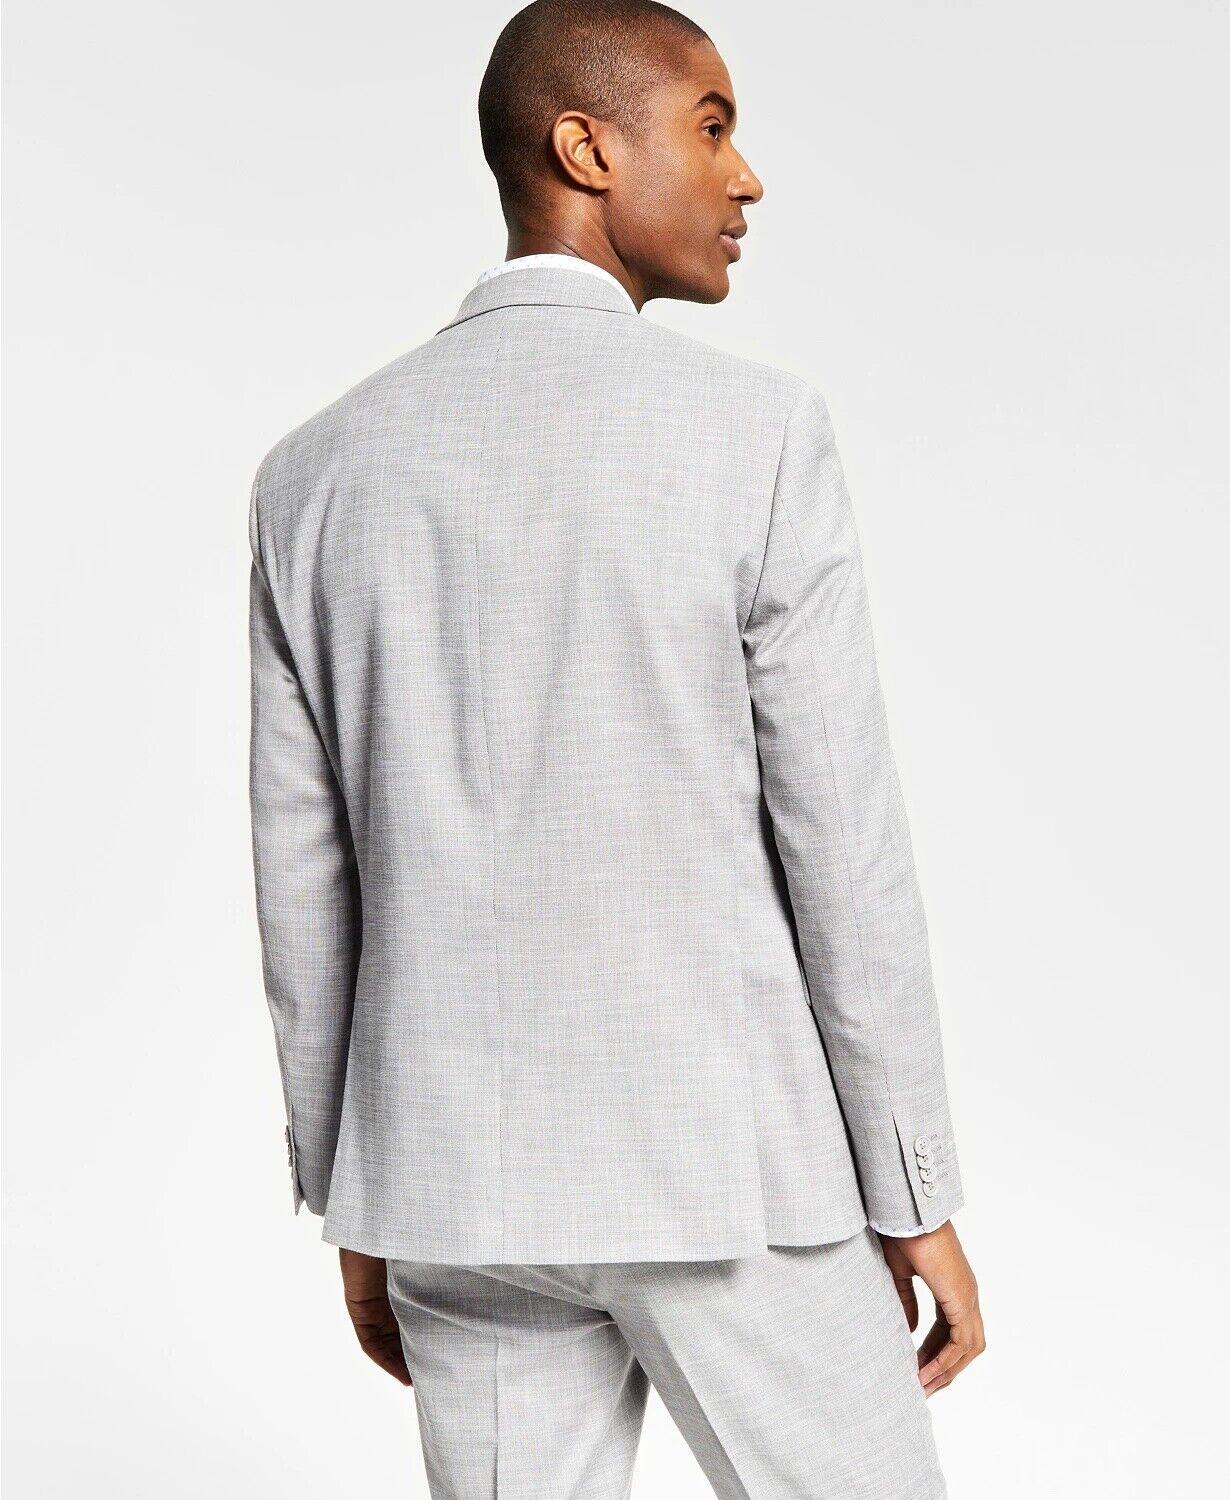 Alfani Men's Slim-Fit Solid Knit Suit Jacket 46L Light Grey SPORT COAT